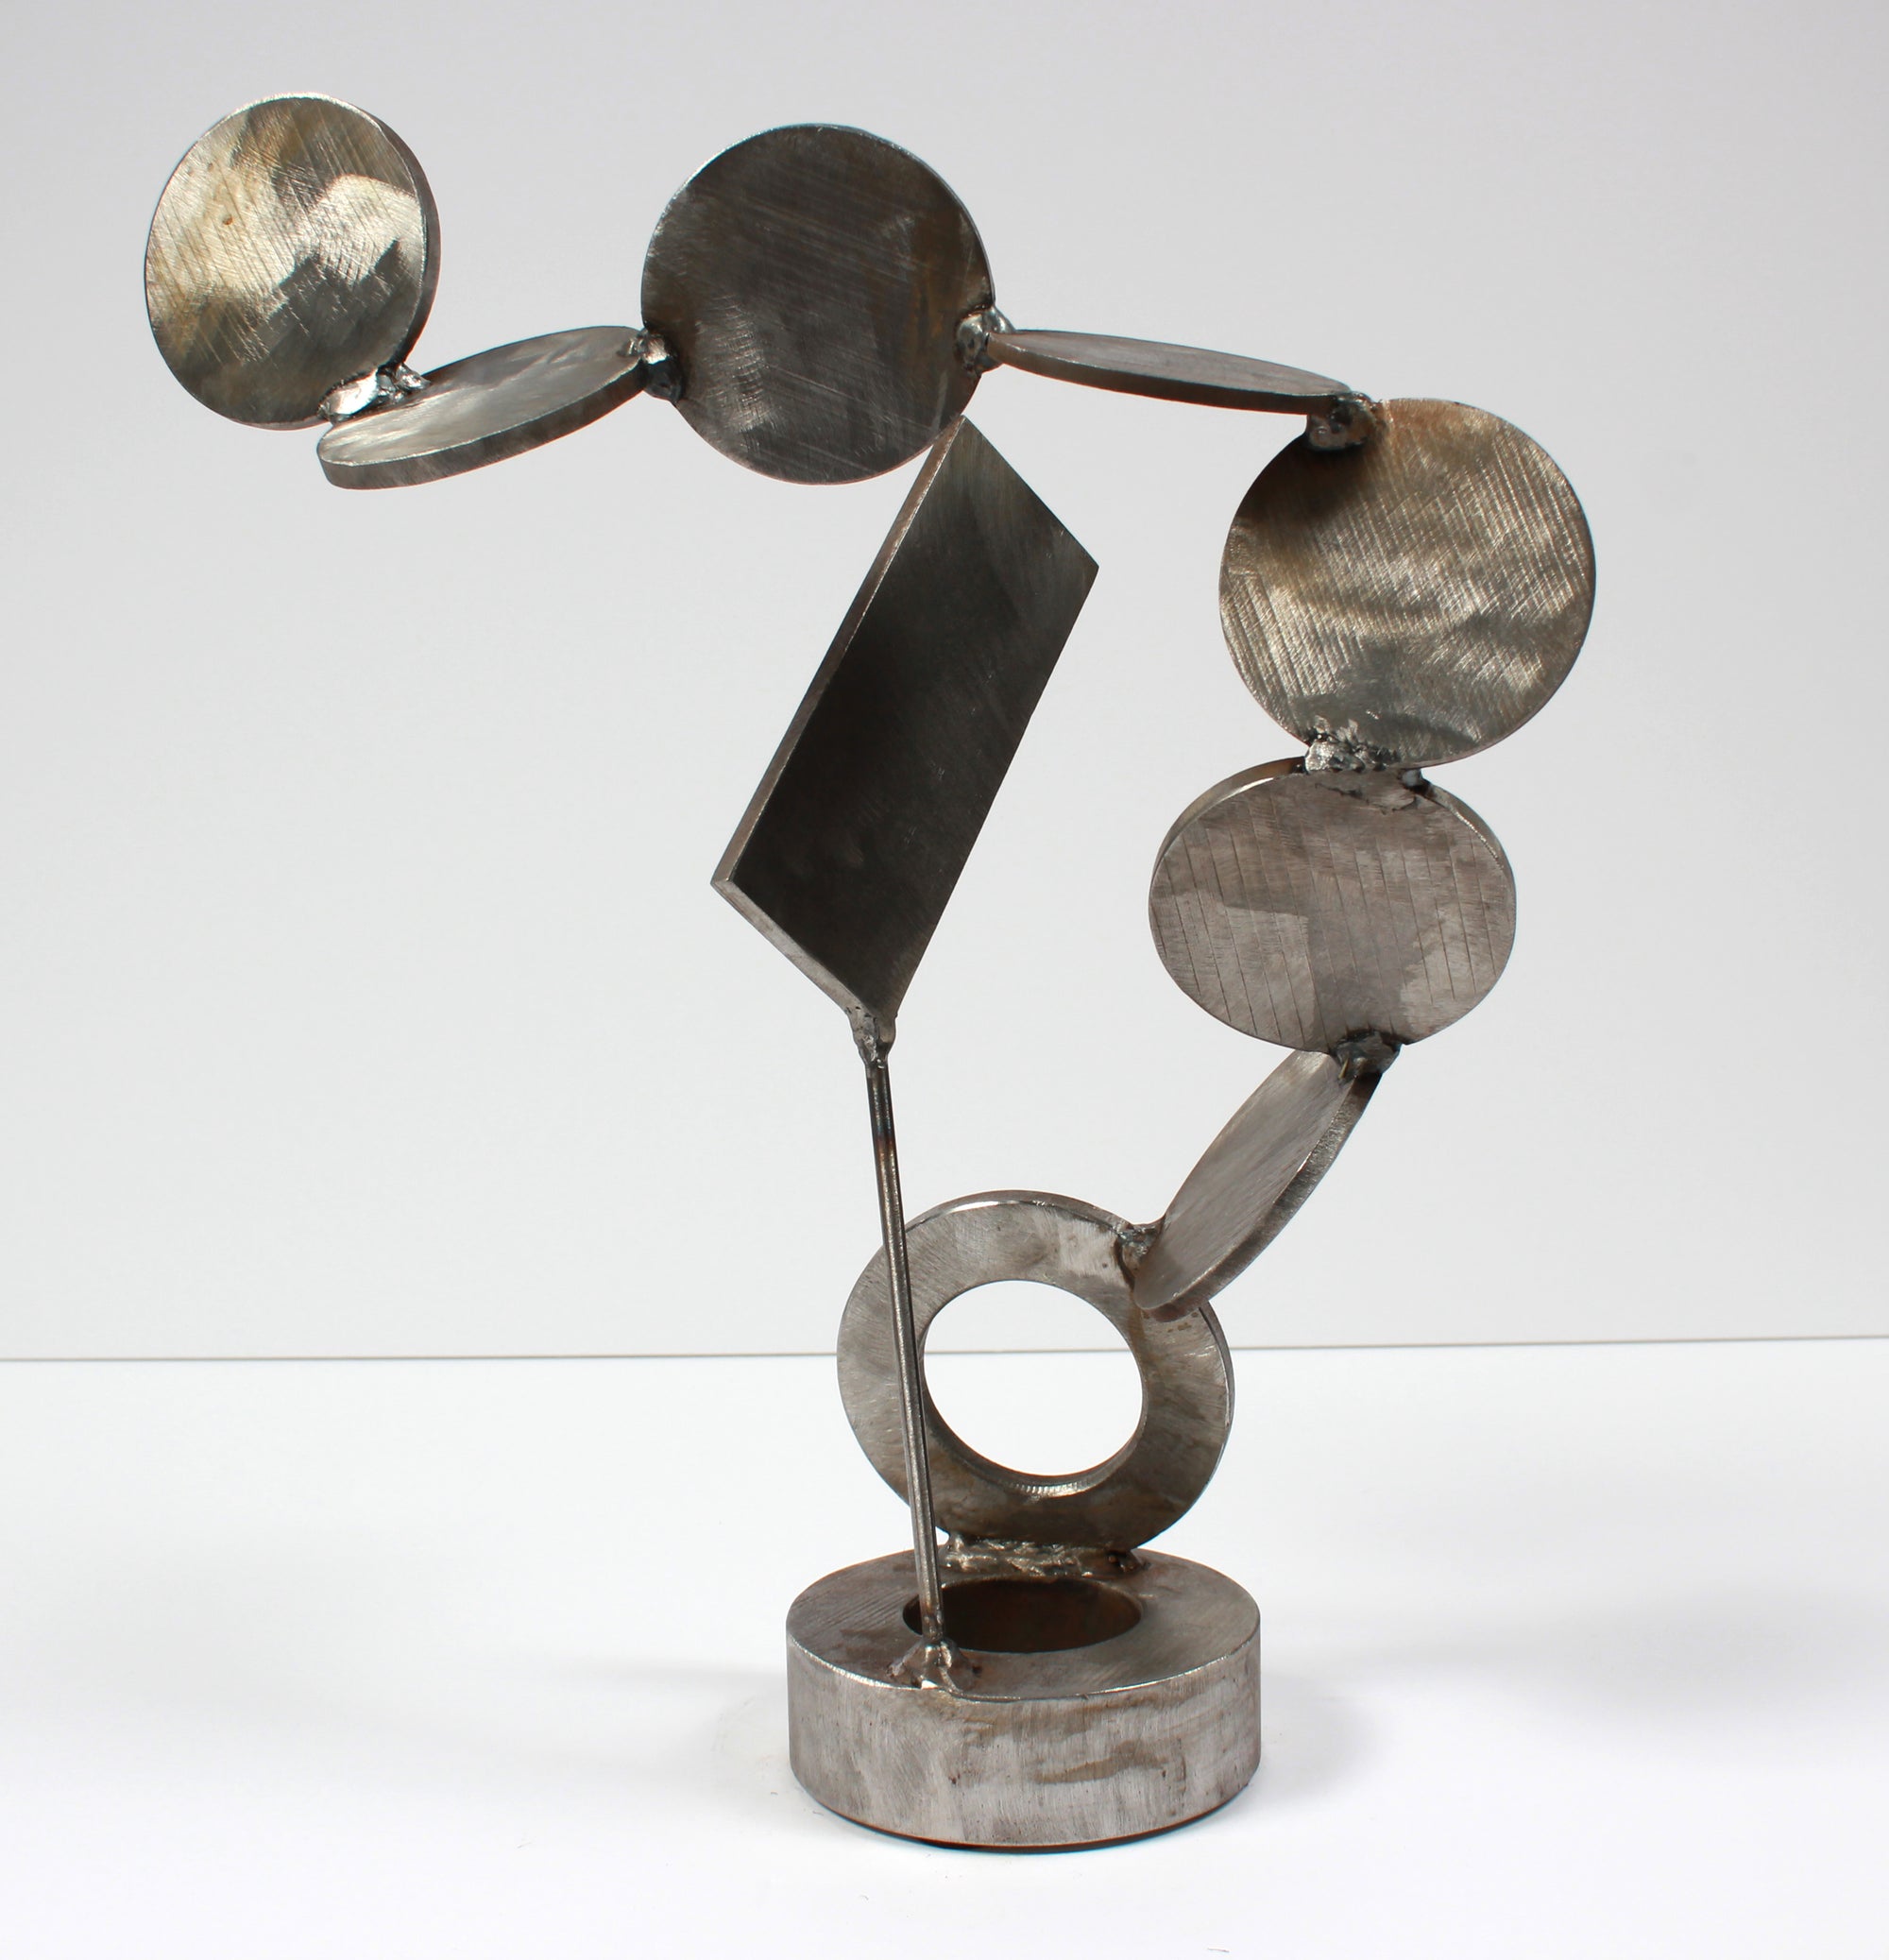 <i>Disks & Angles</i> <br>Welded Steel Sculpture <br><br>#A9200